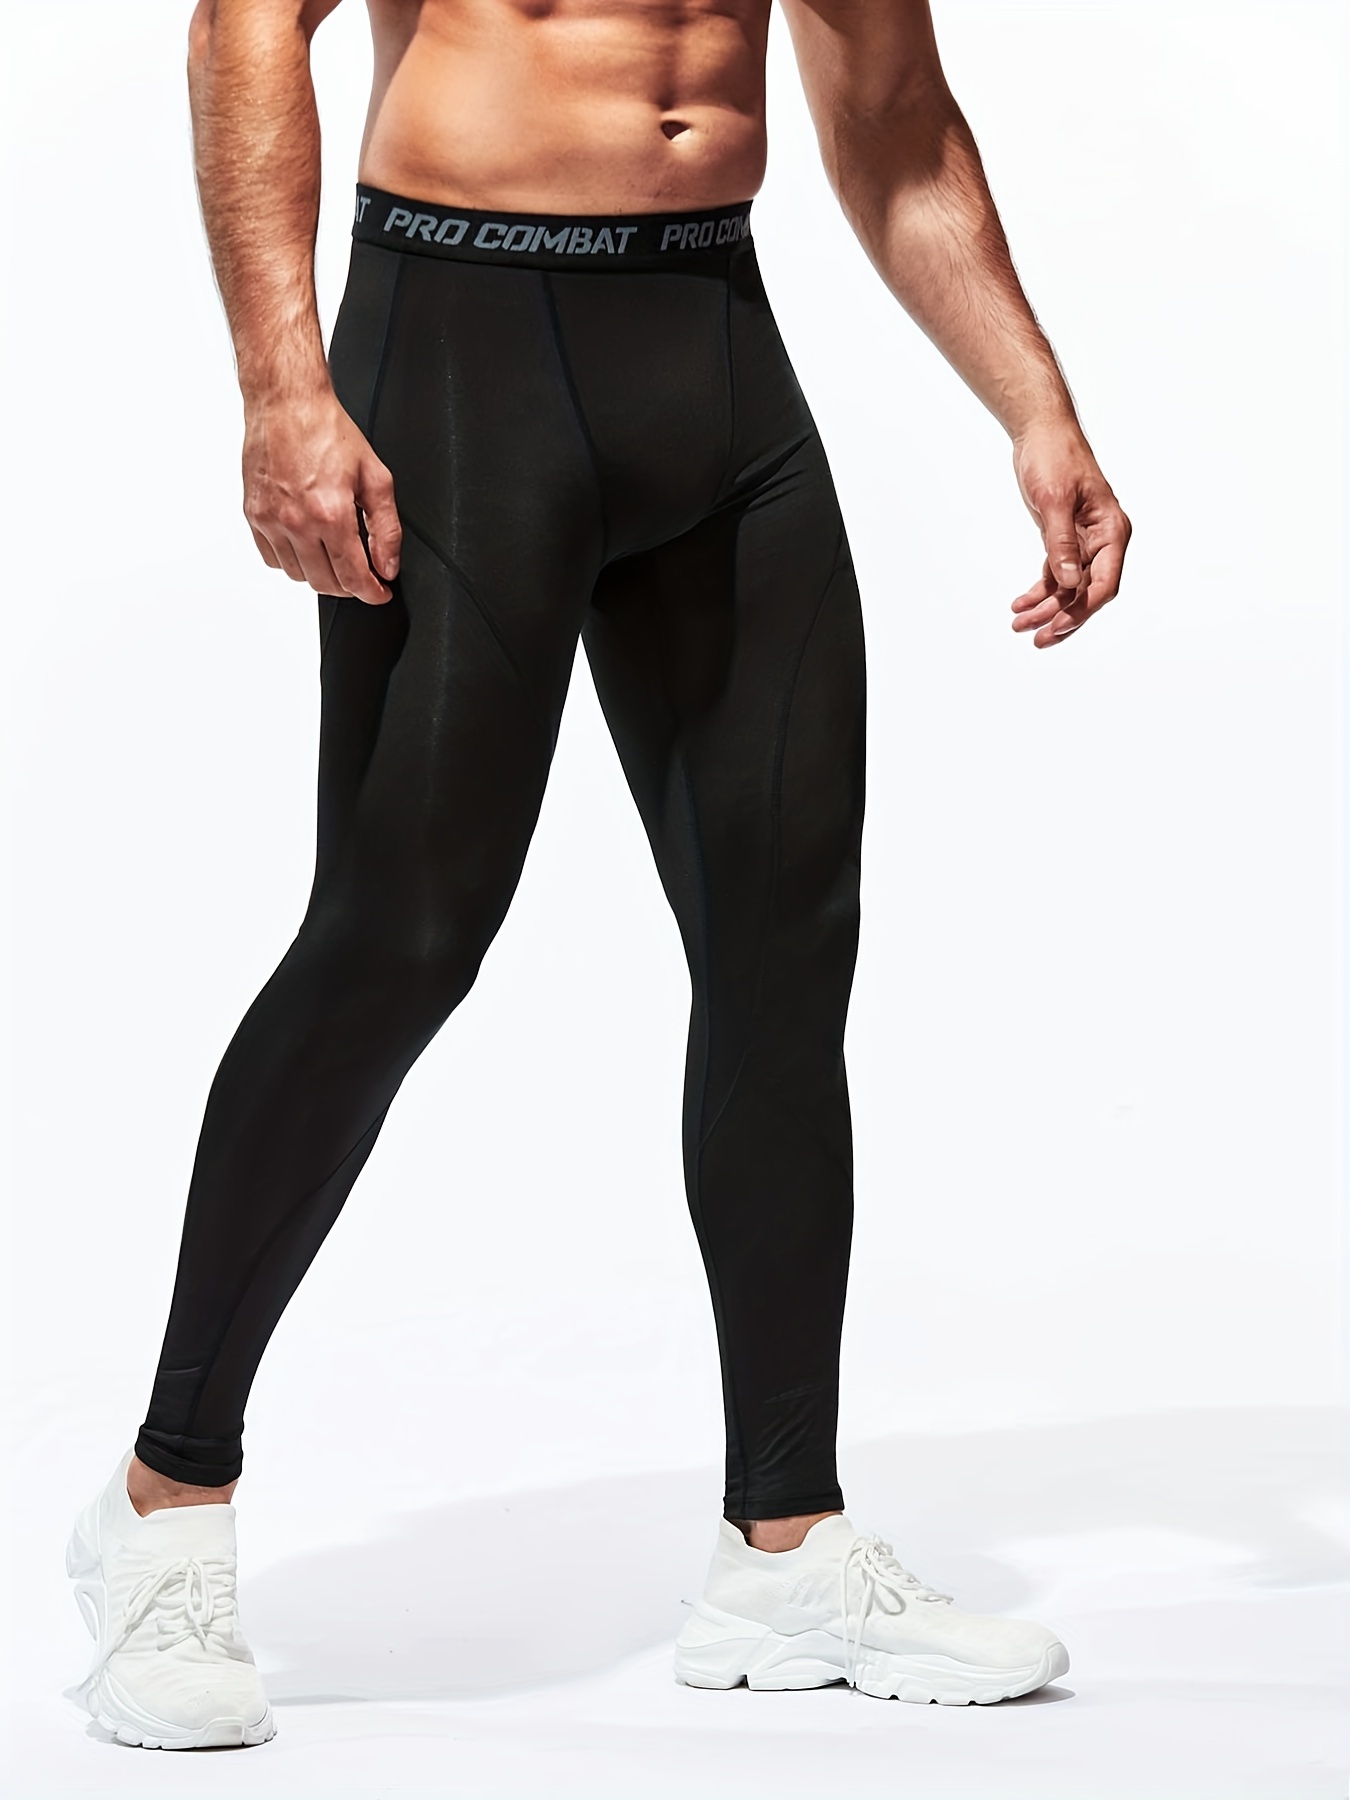 Nike Pro Men's Tights Training Pant Black